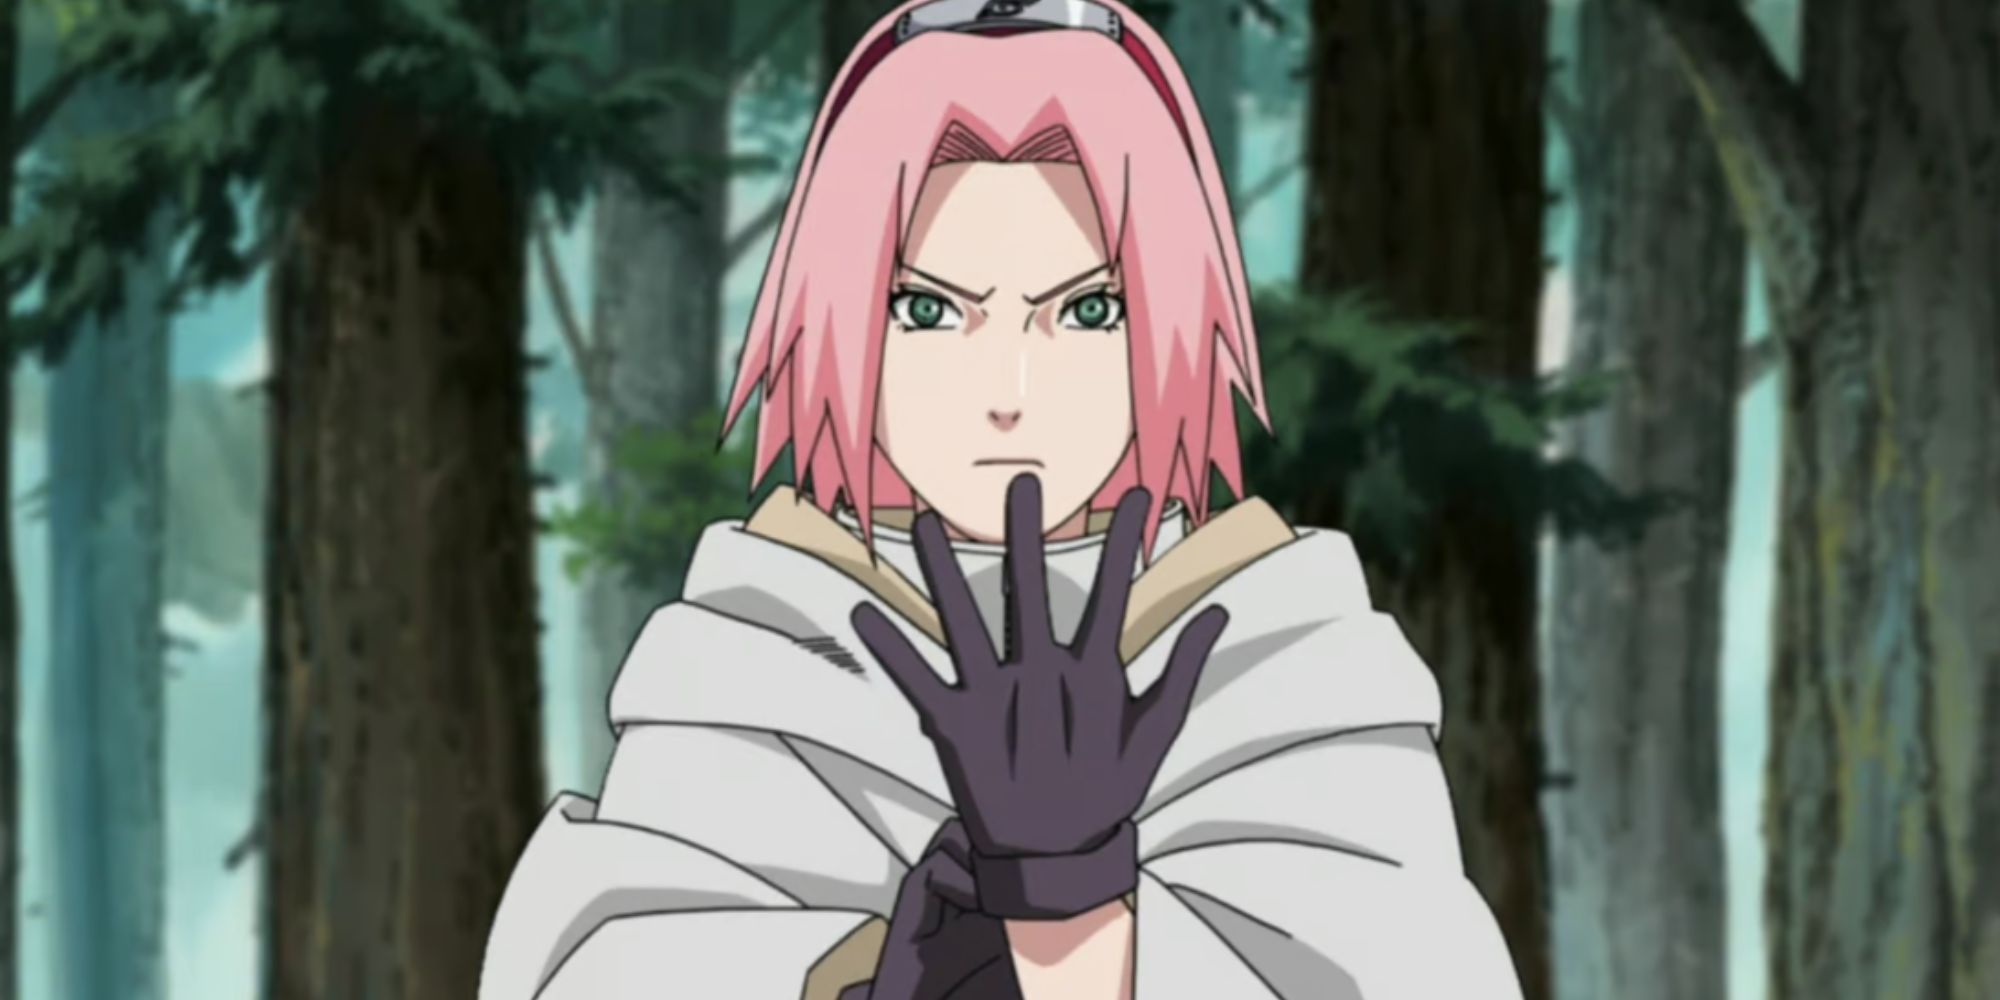 sakura puts on her gloves